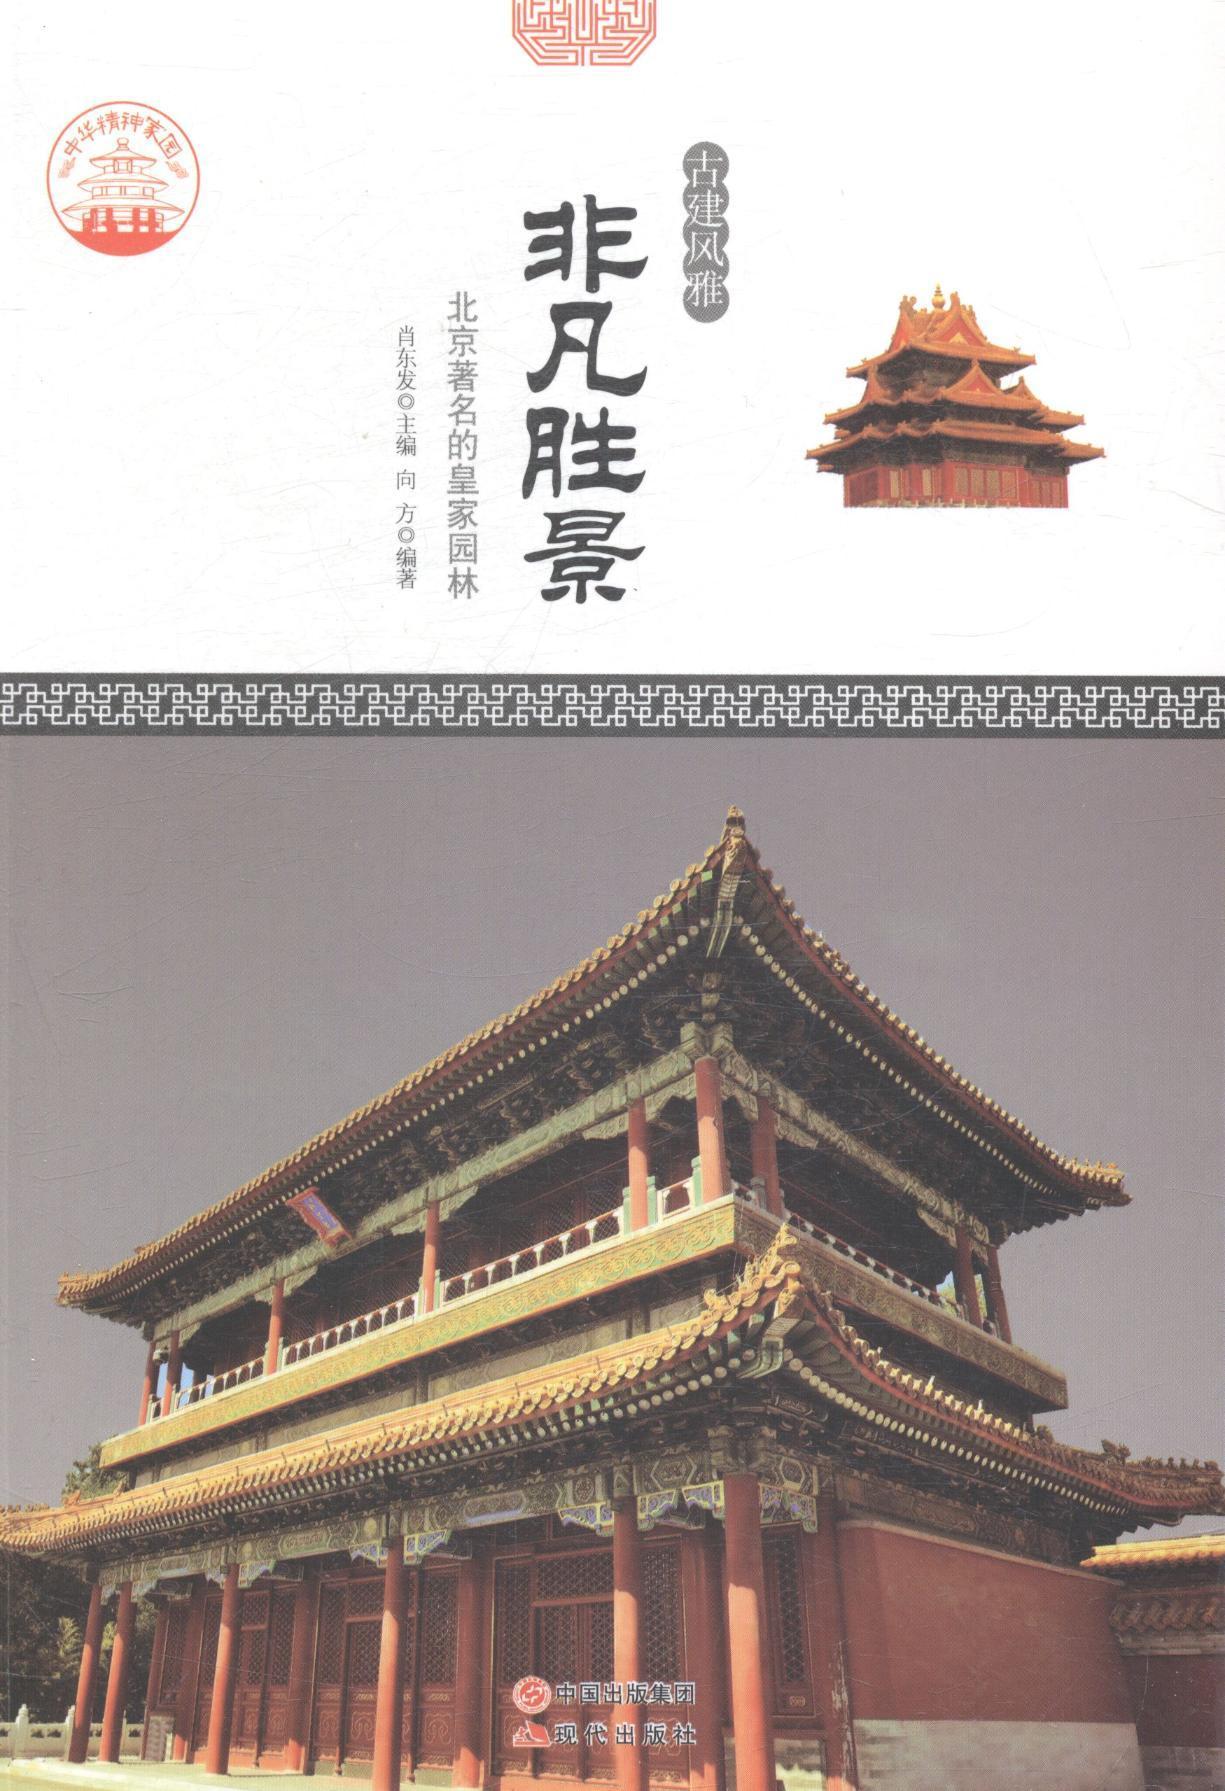 非凡胜景:北京的园林肖东发 古典园林介绍中国教材书籍